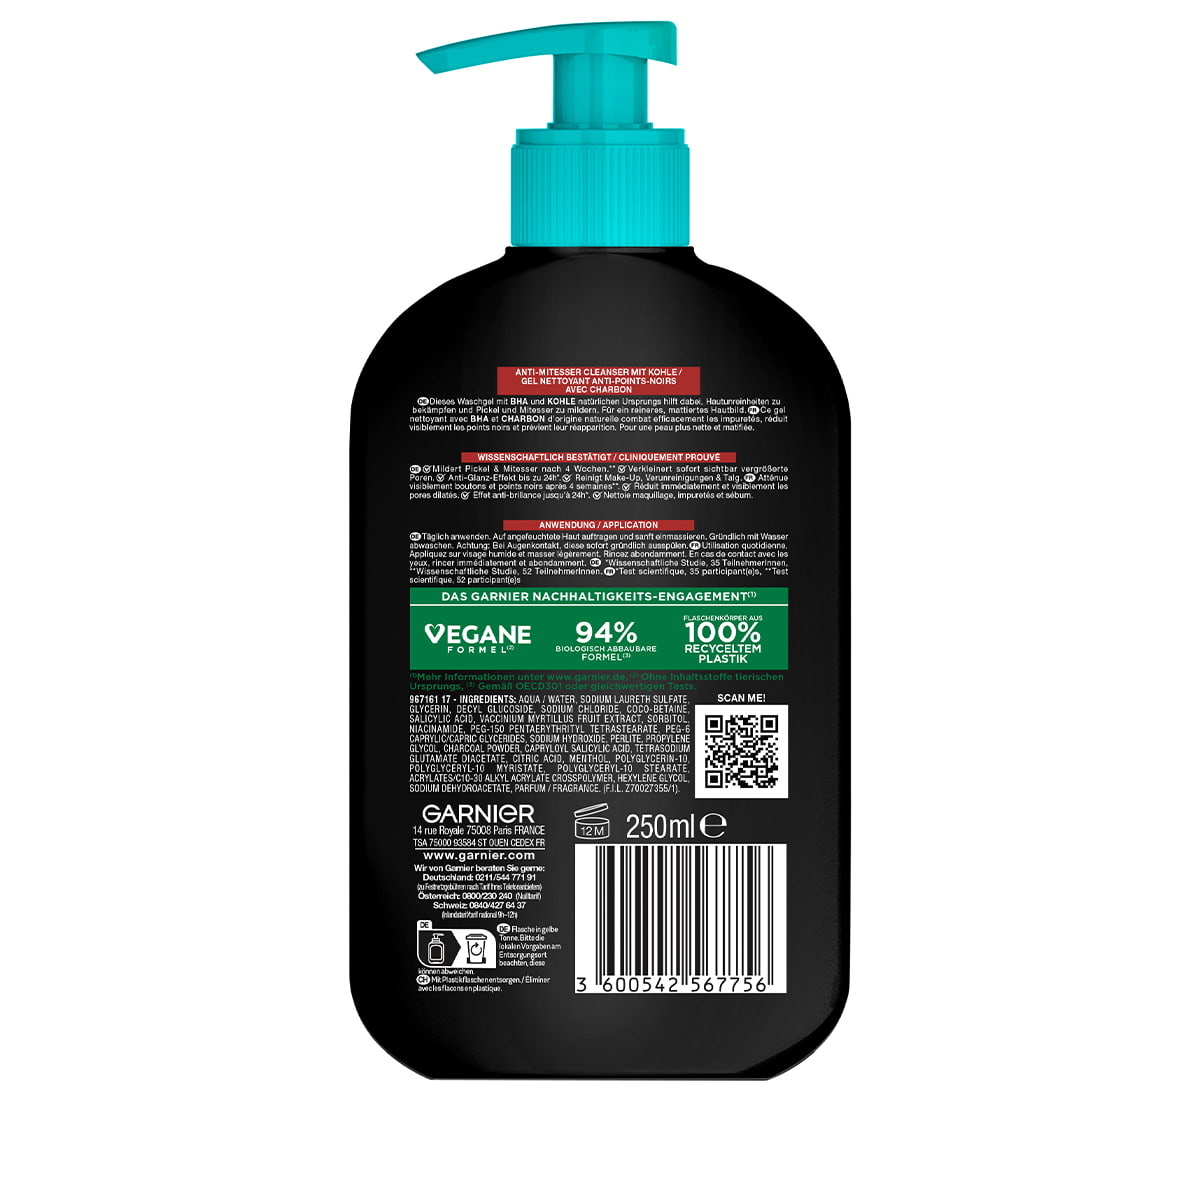 Hautklar Anti-Mitesser • Cleanser Waschgel BHA Carbon • Garnier